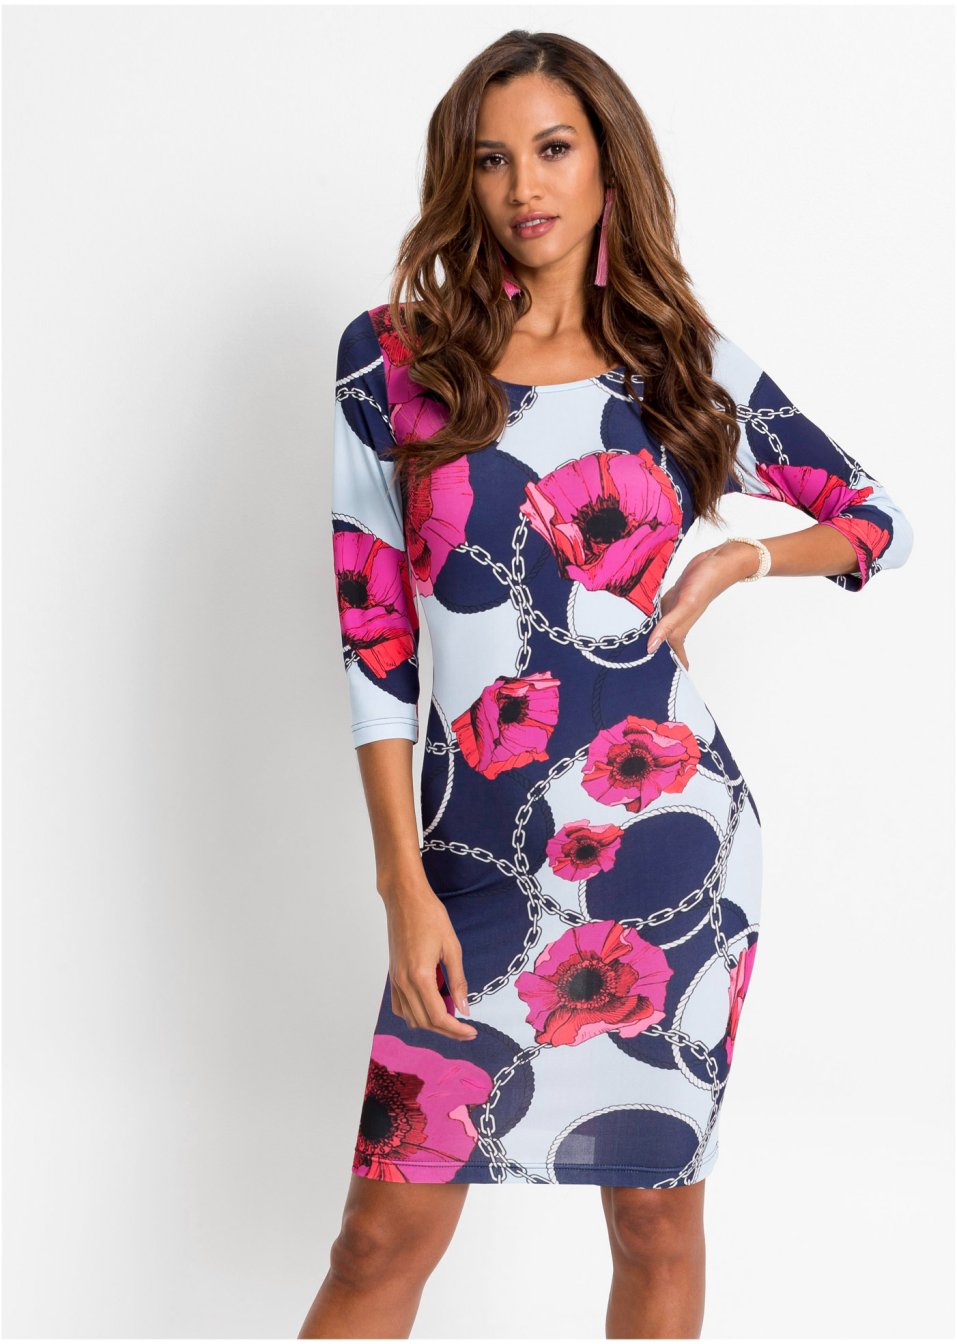 Kleid mit Print blau/pink geblümt - BODYFLIRT boutique ...